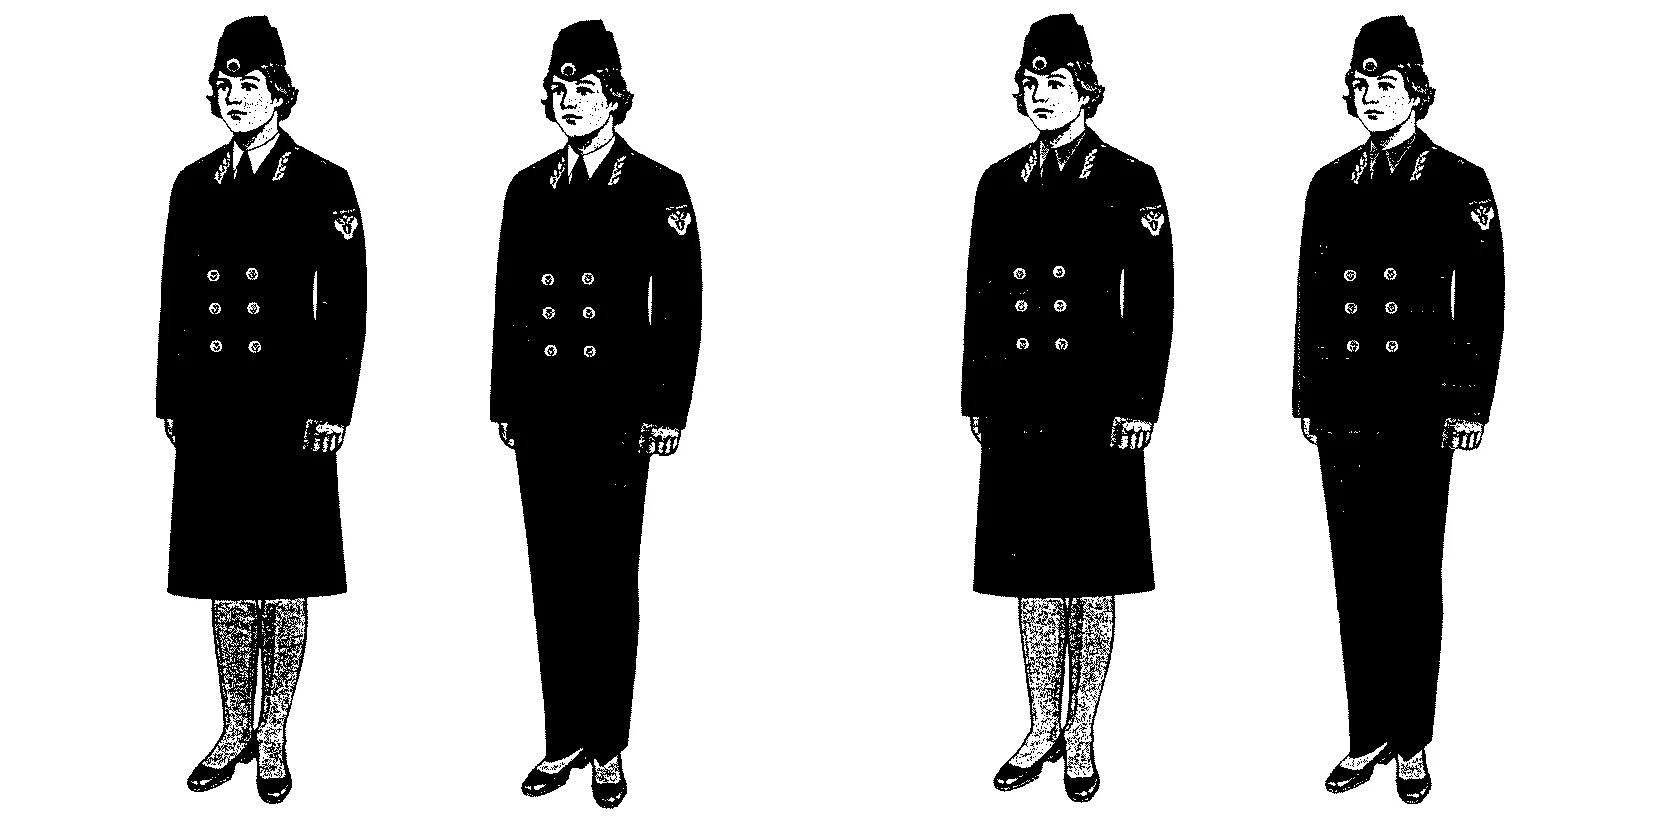 Royal plane maid uniform